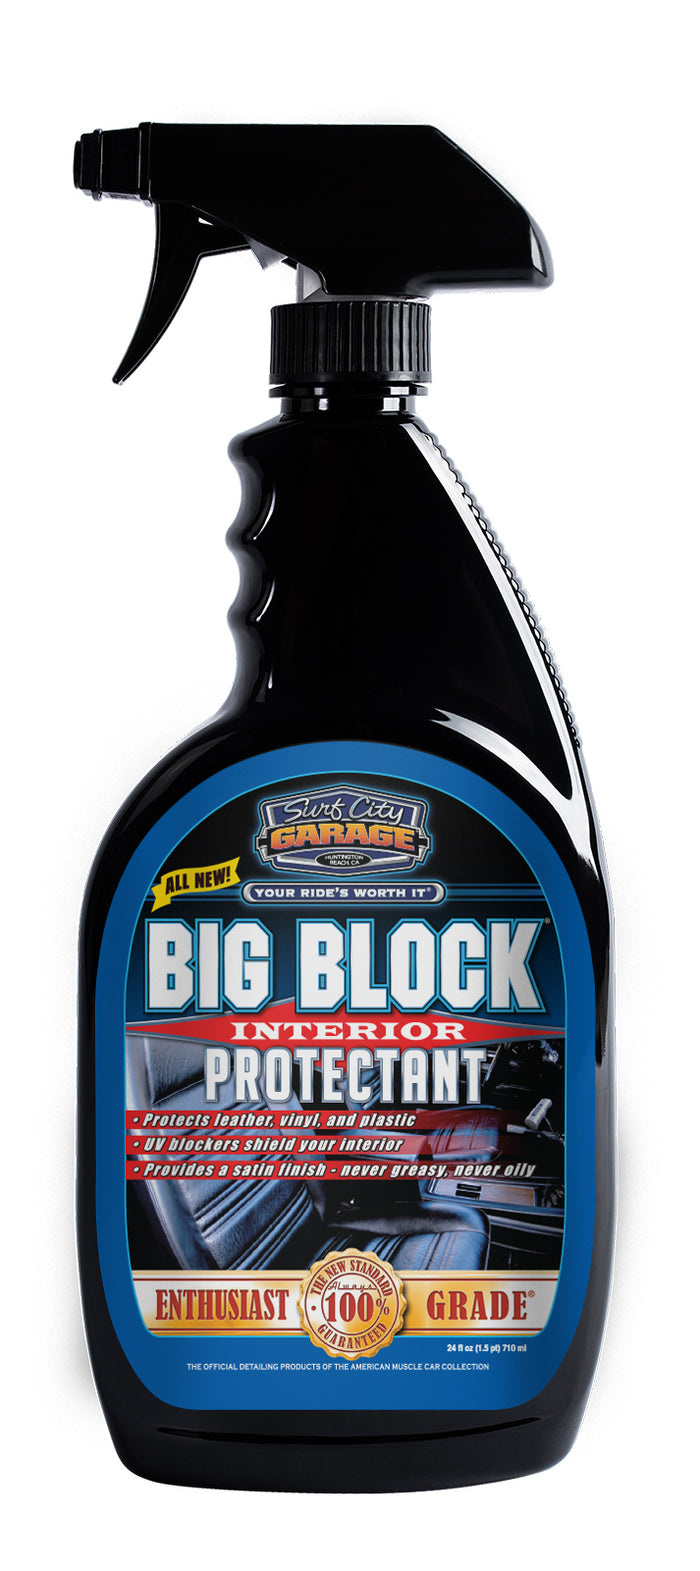 Big Block® Interior Protectant